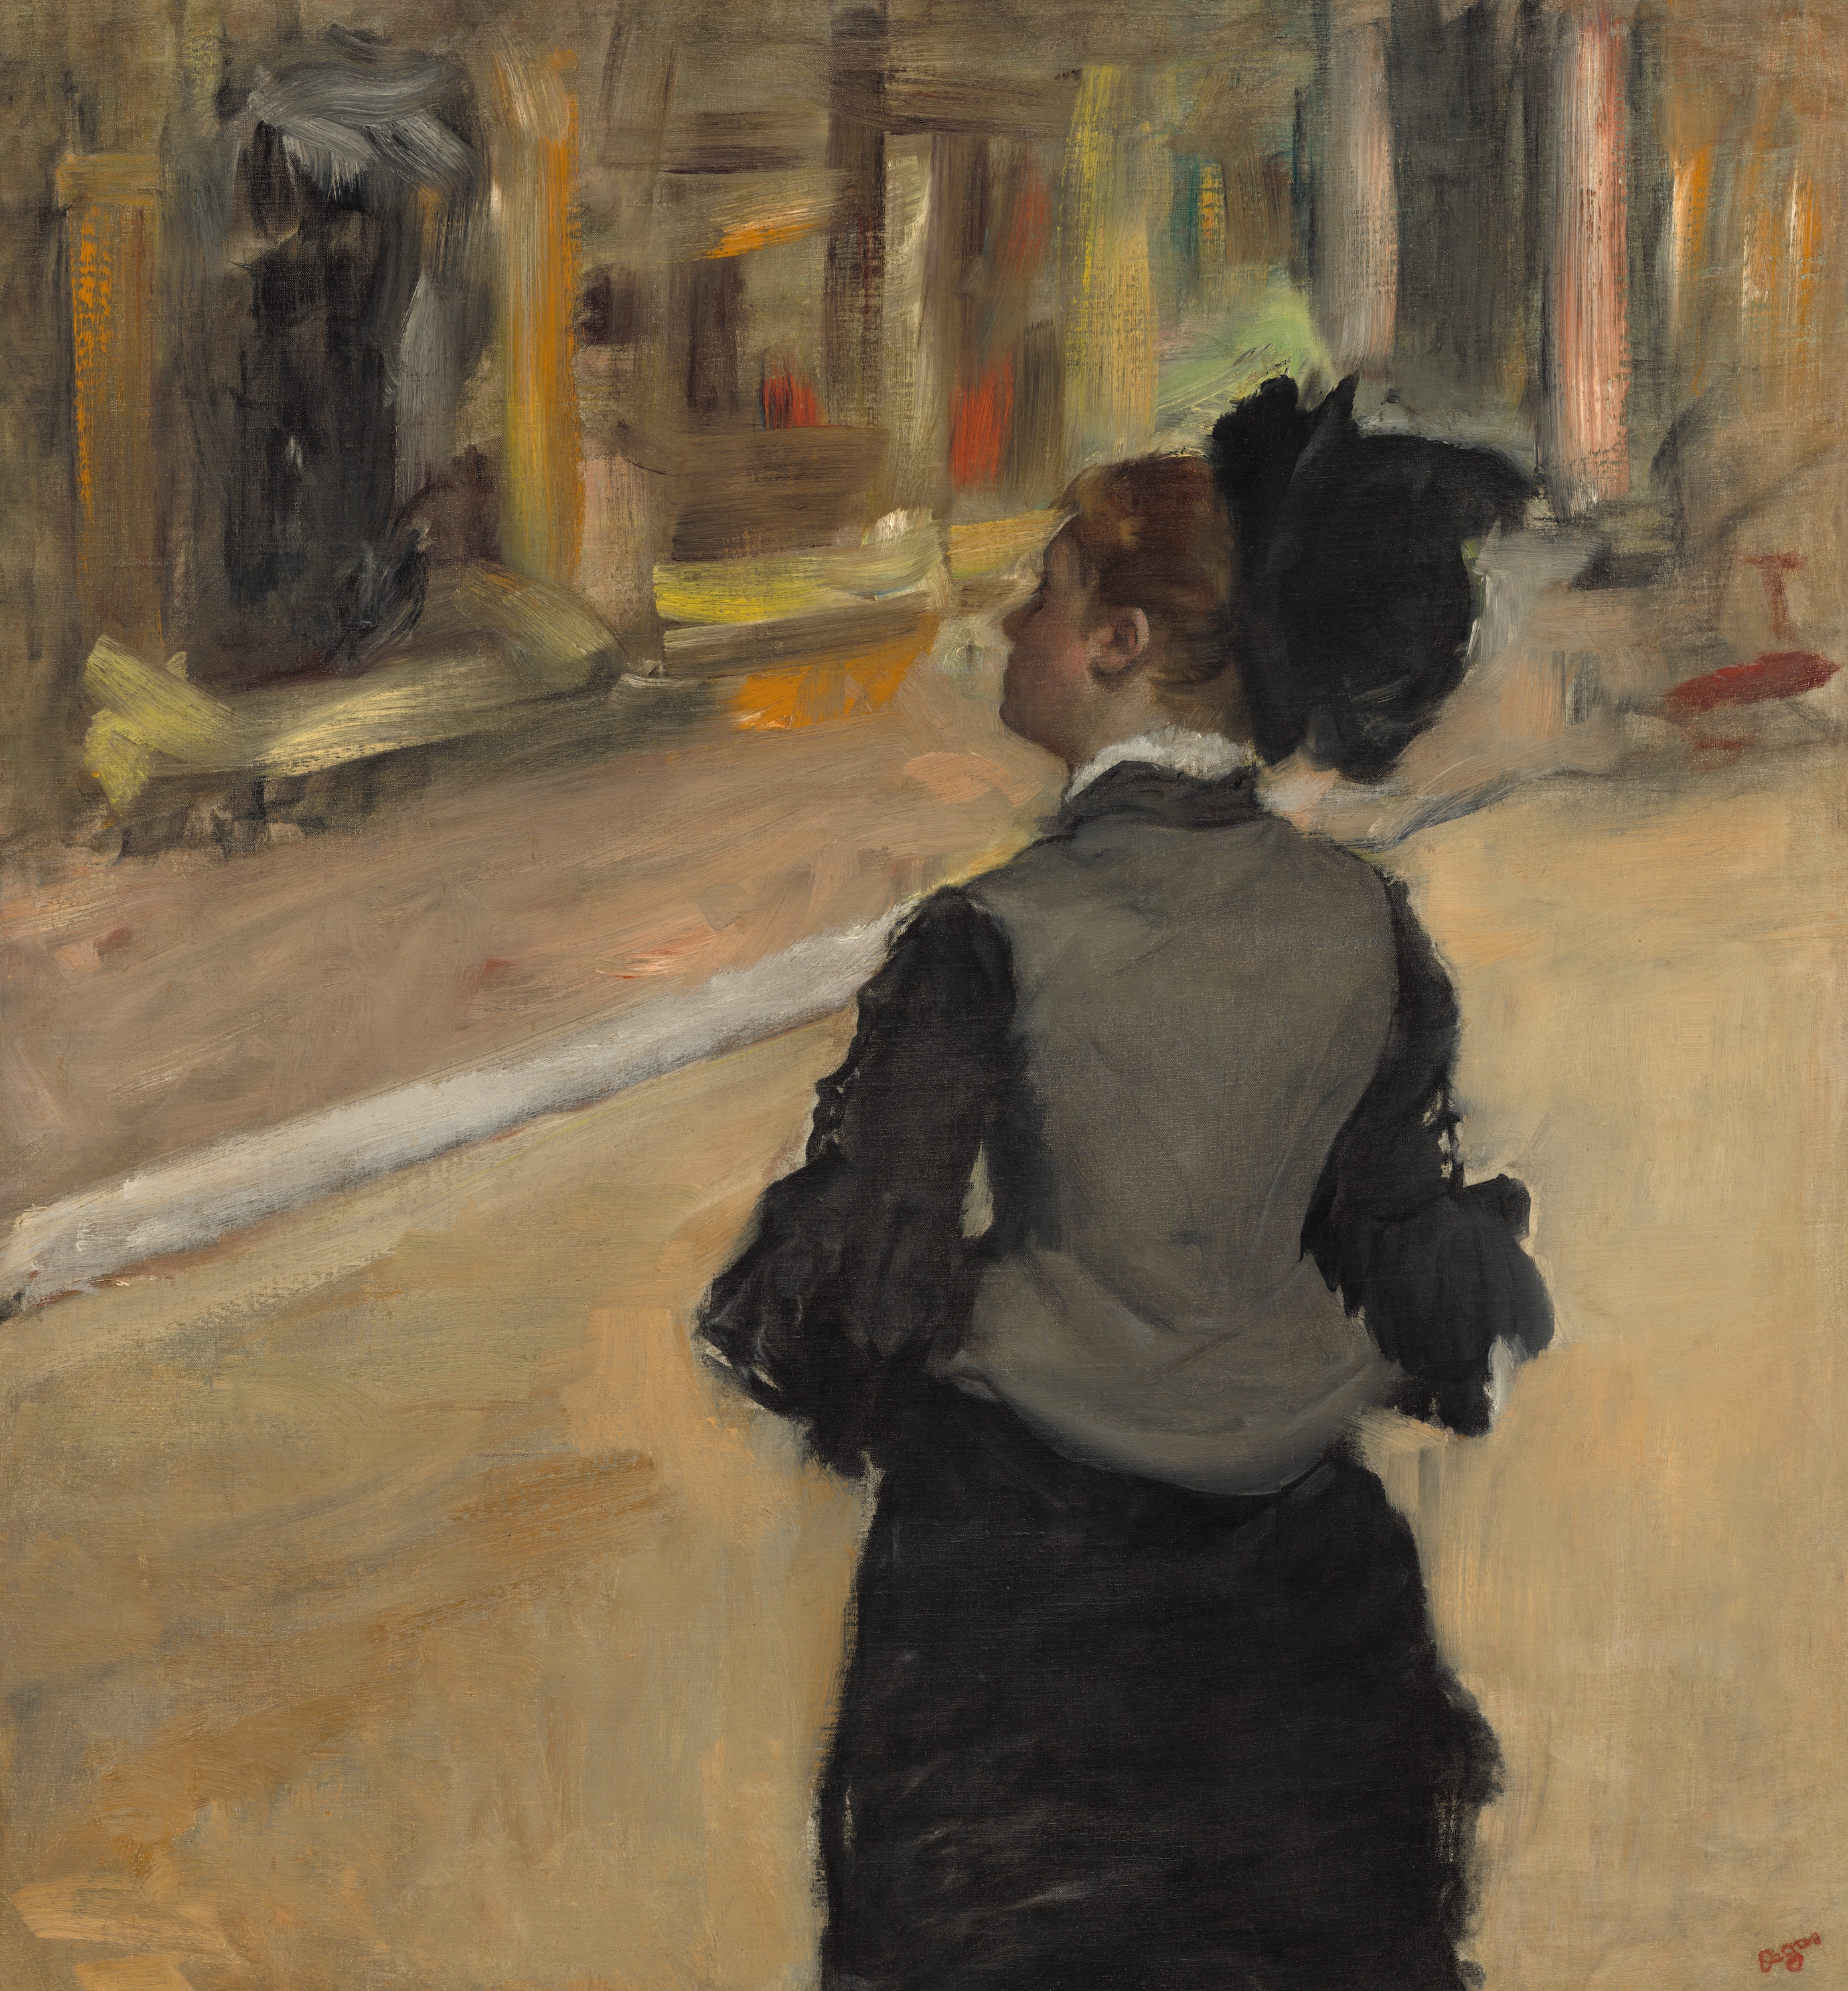 Vrouw gezien van achteren (Bezoek aan een museum) by Edgar Degas - ca. 1879-1885 - 81,3 × 75,6 cm 